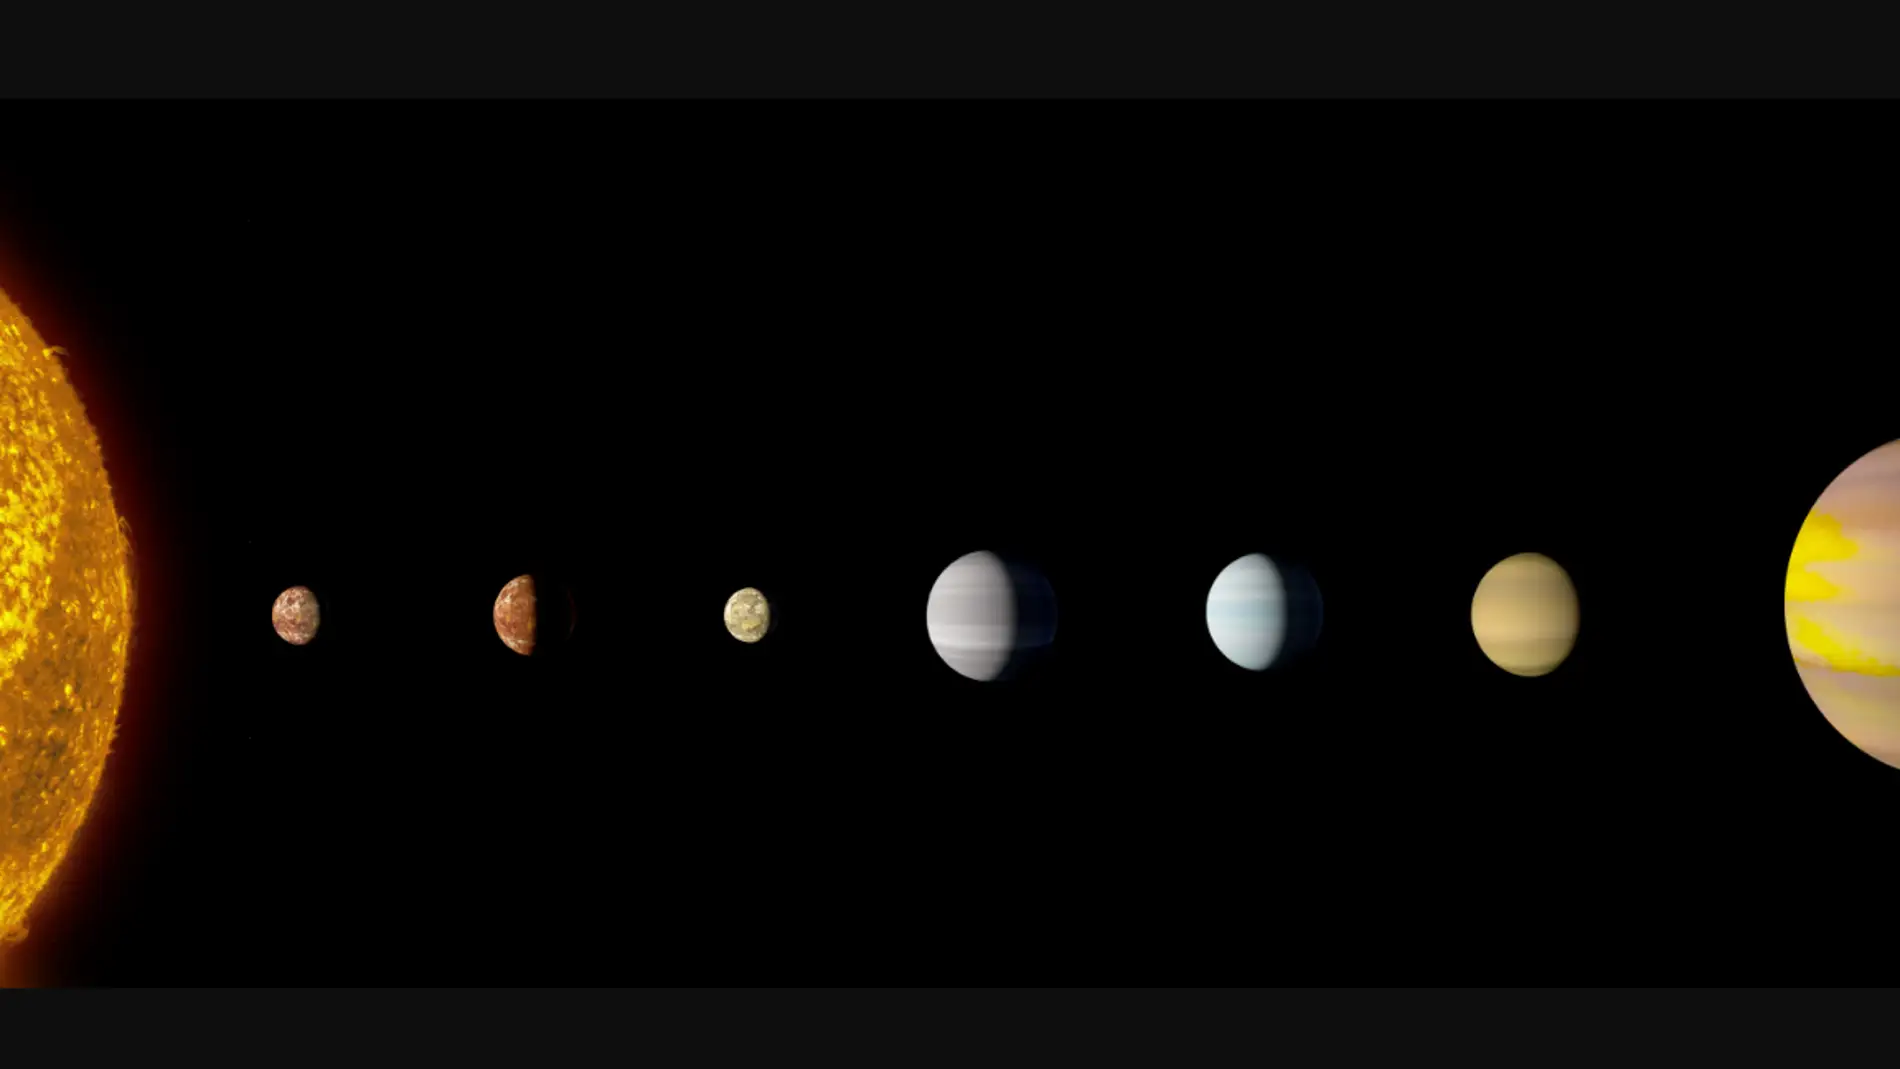 Kepler confirma que existe un sistema solar con ocho planetas